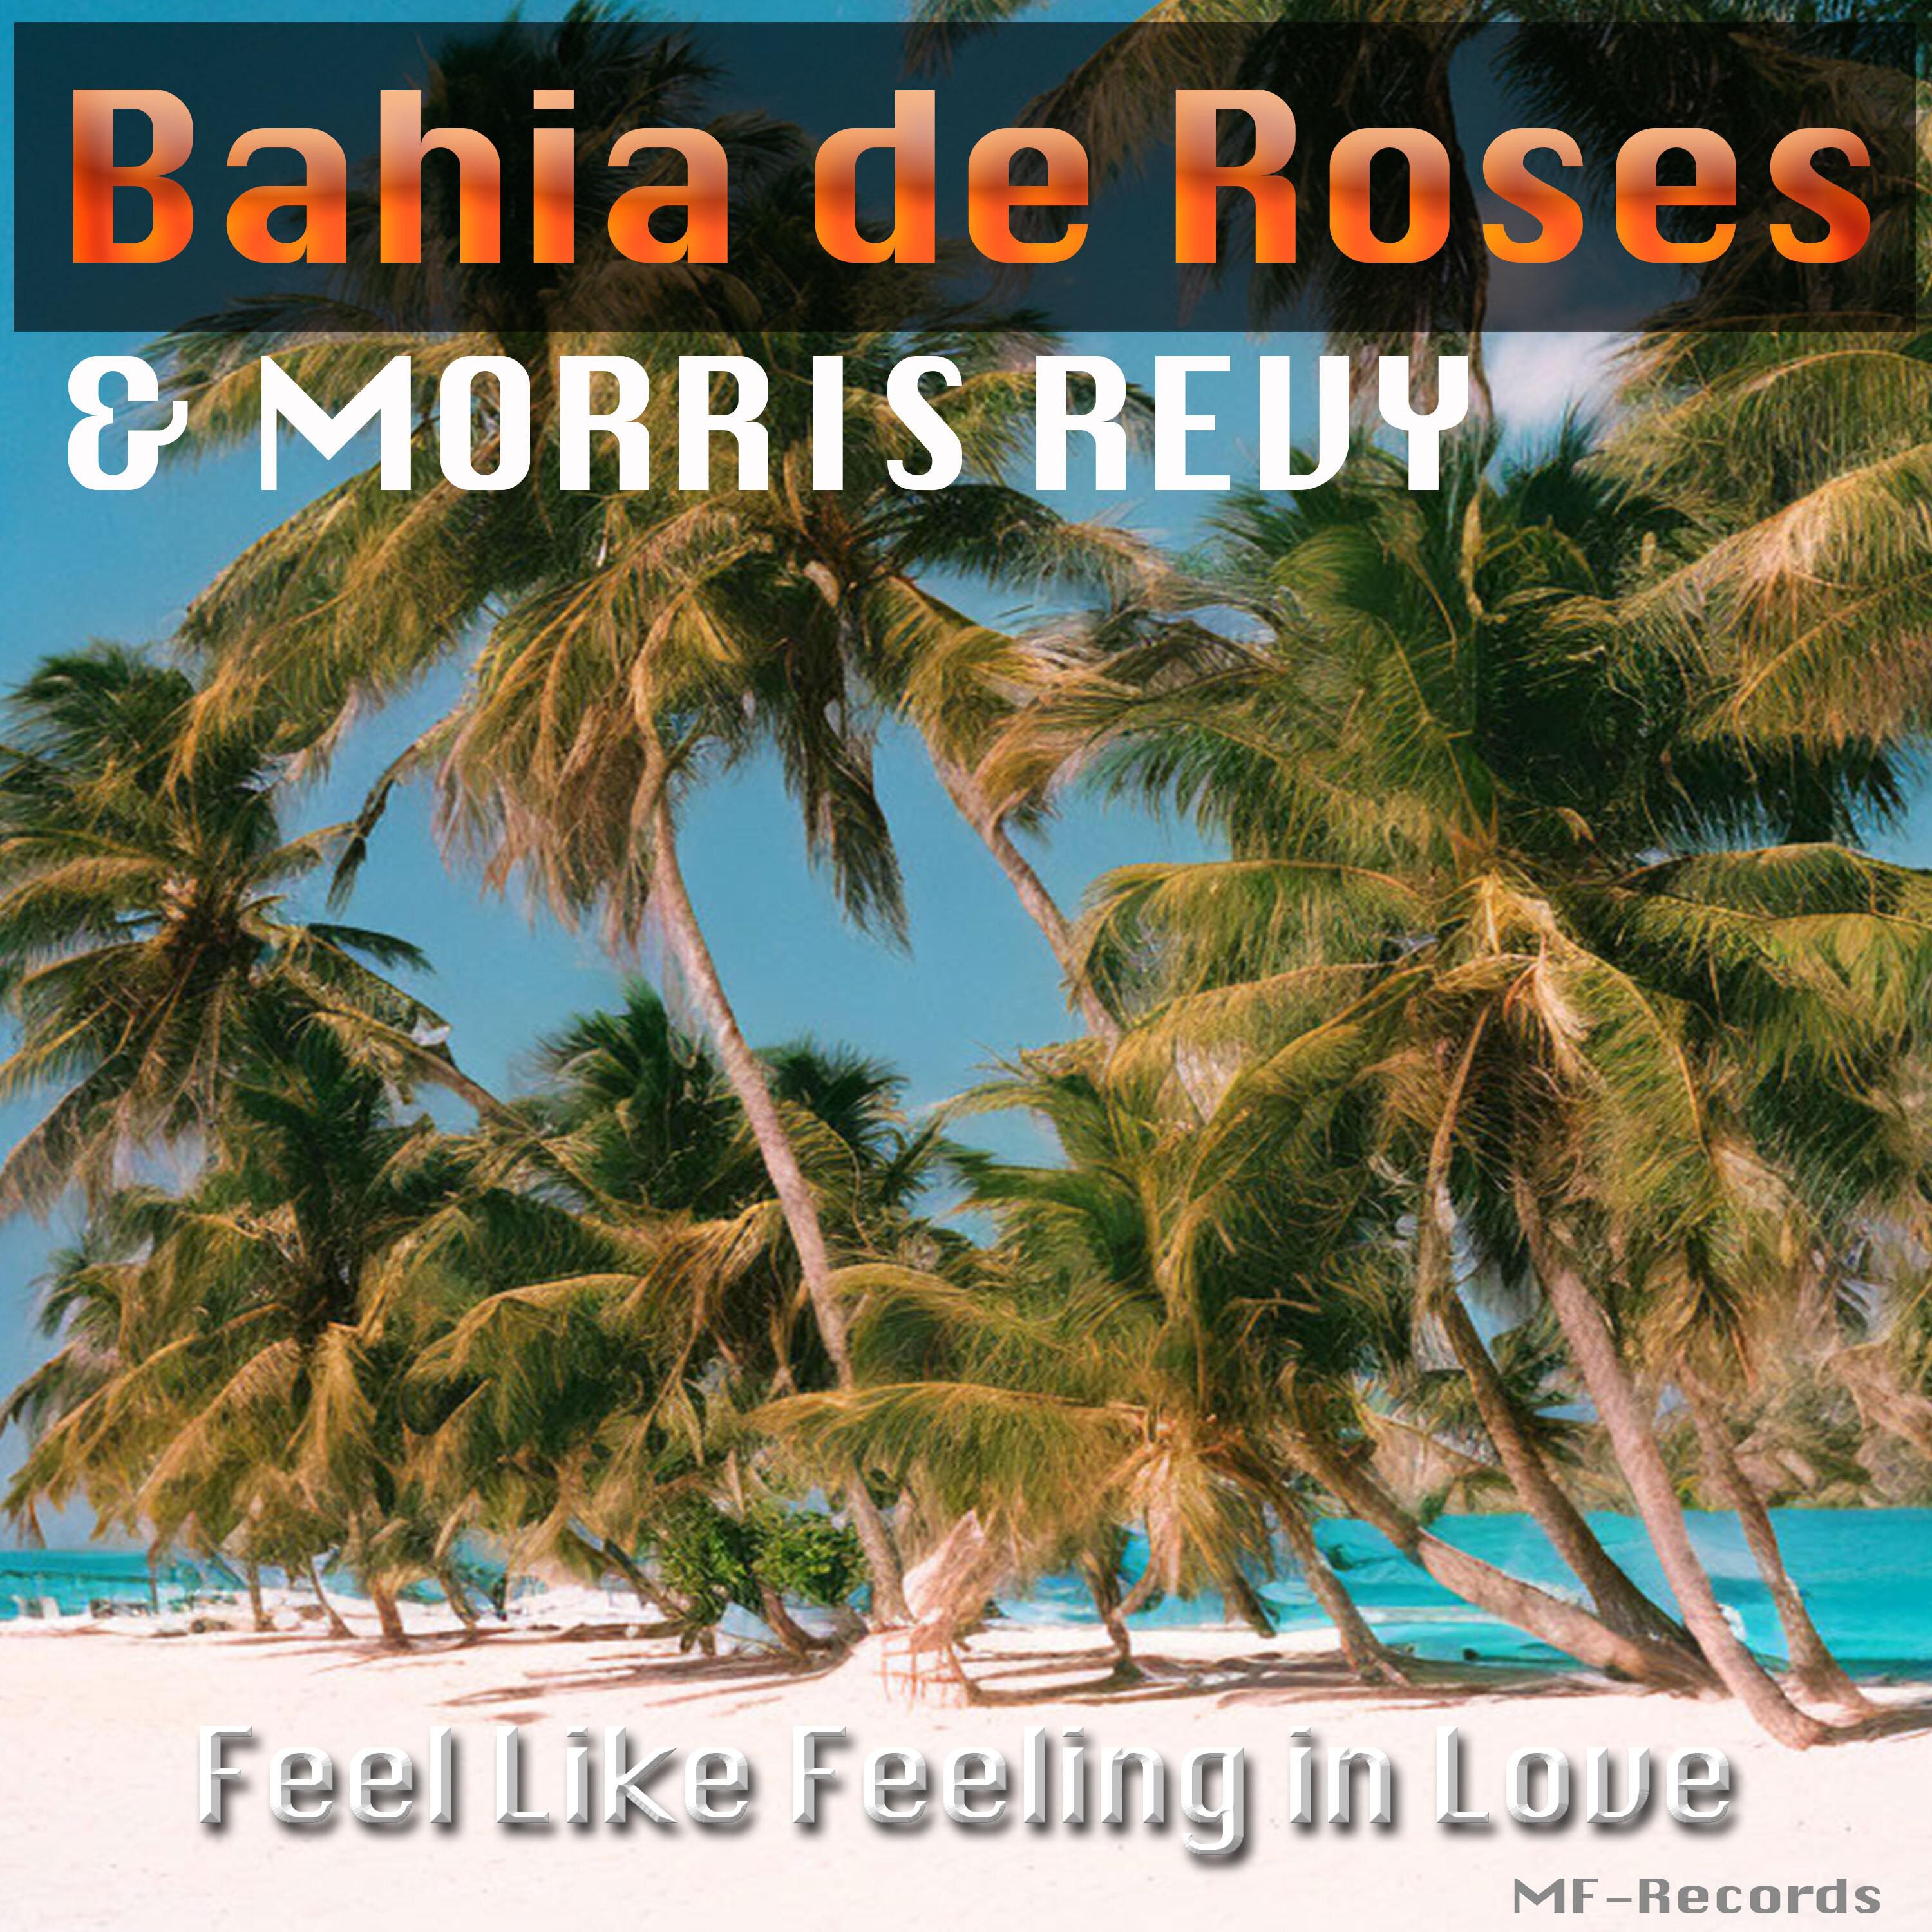 Bahia de Roses - All I Got